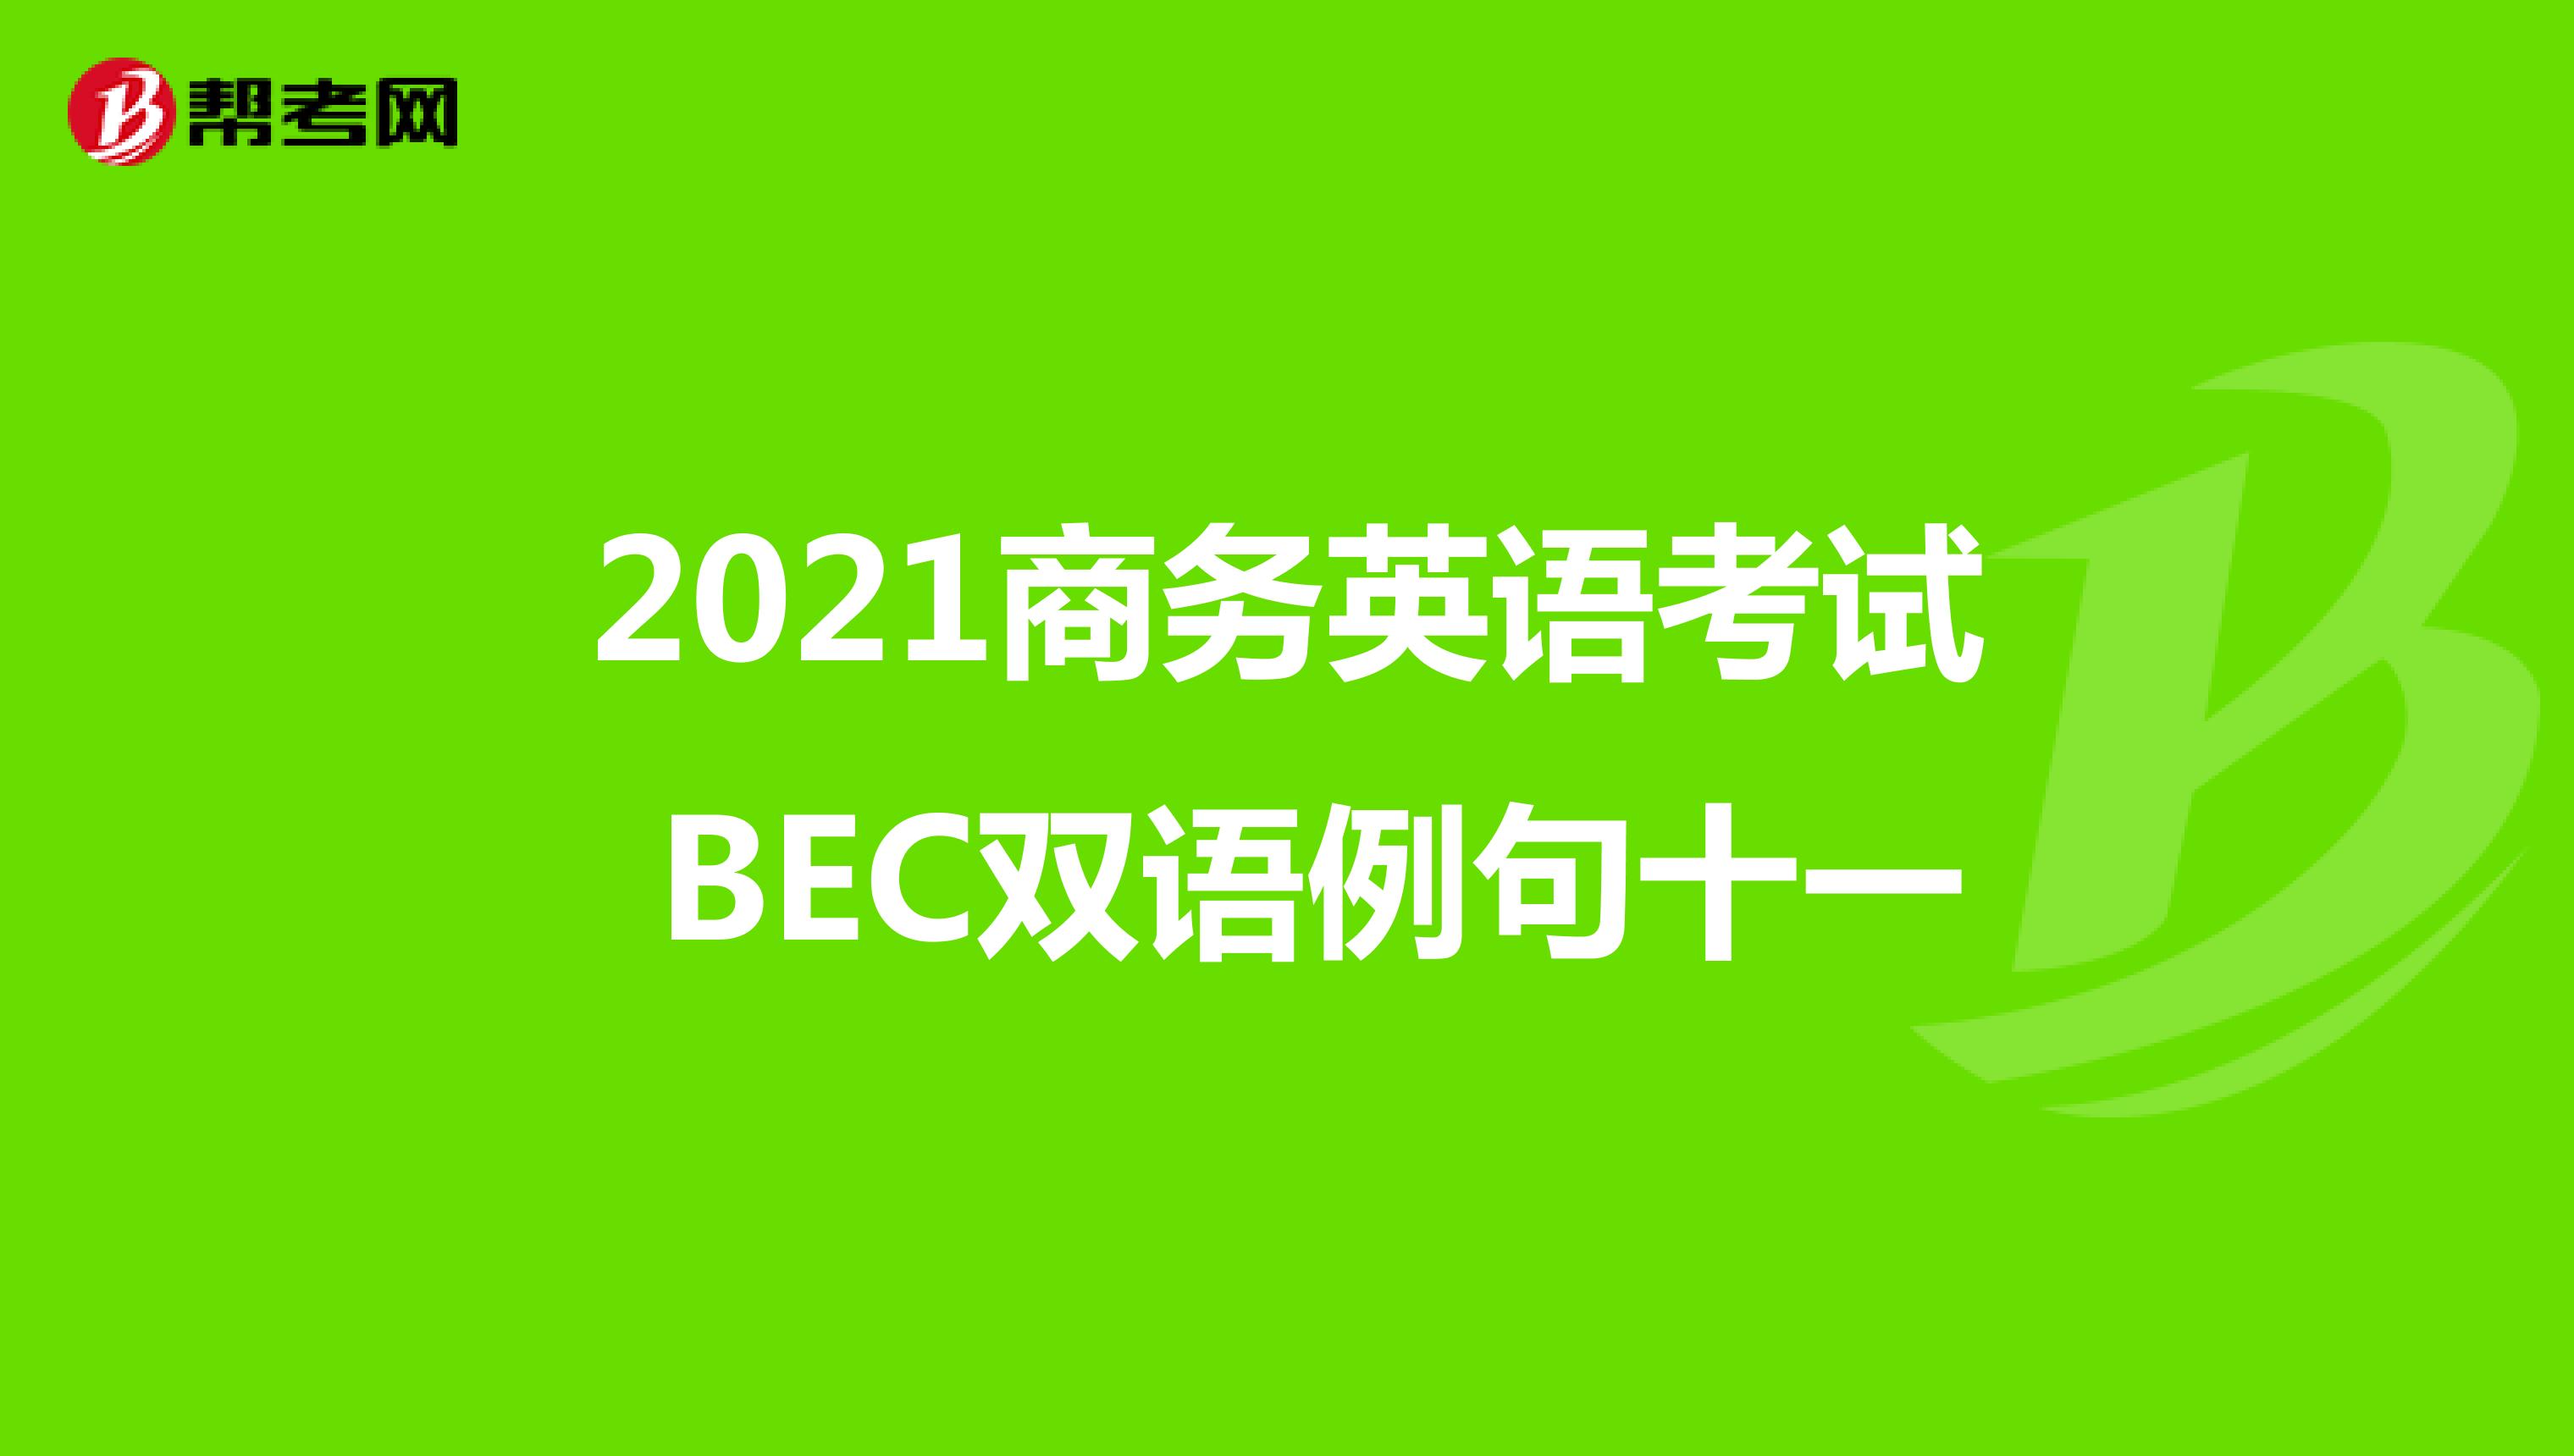 2021年商务英语考试BEC中级双语例句(十一)